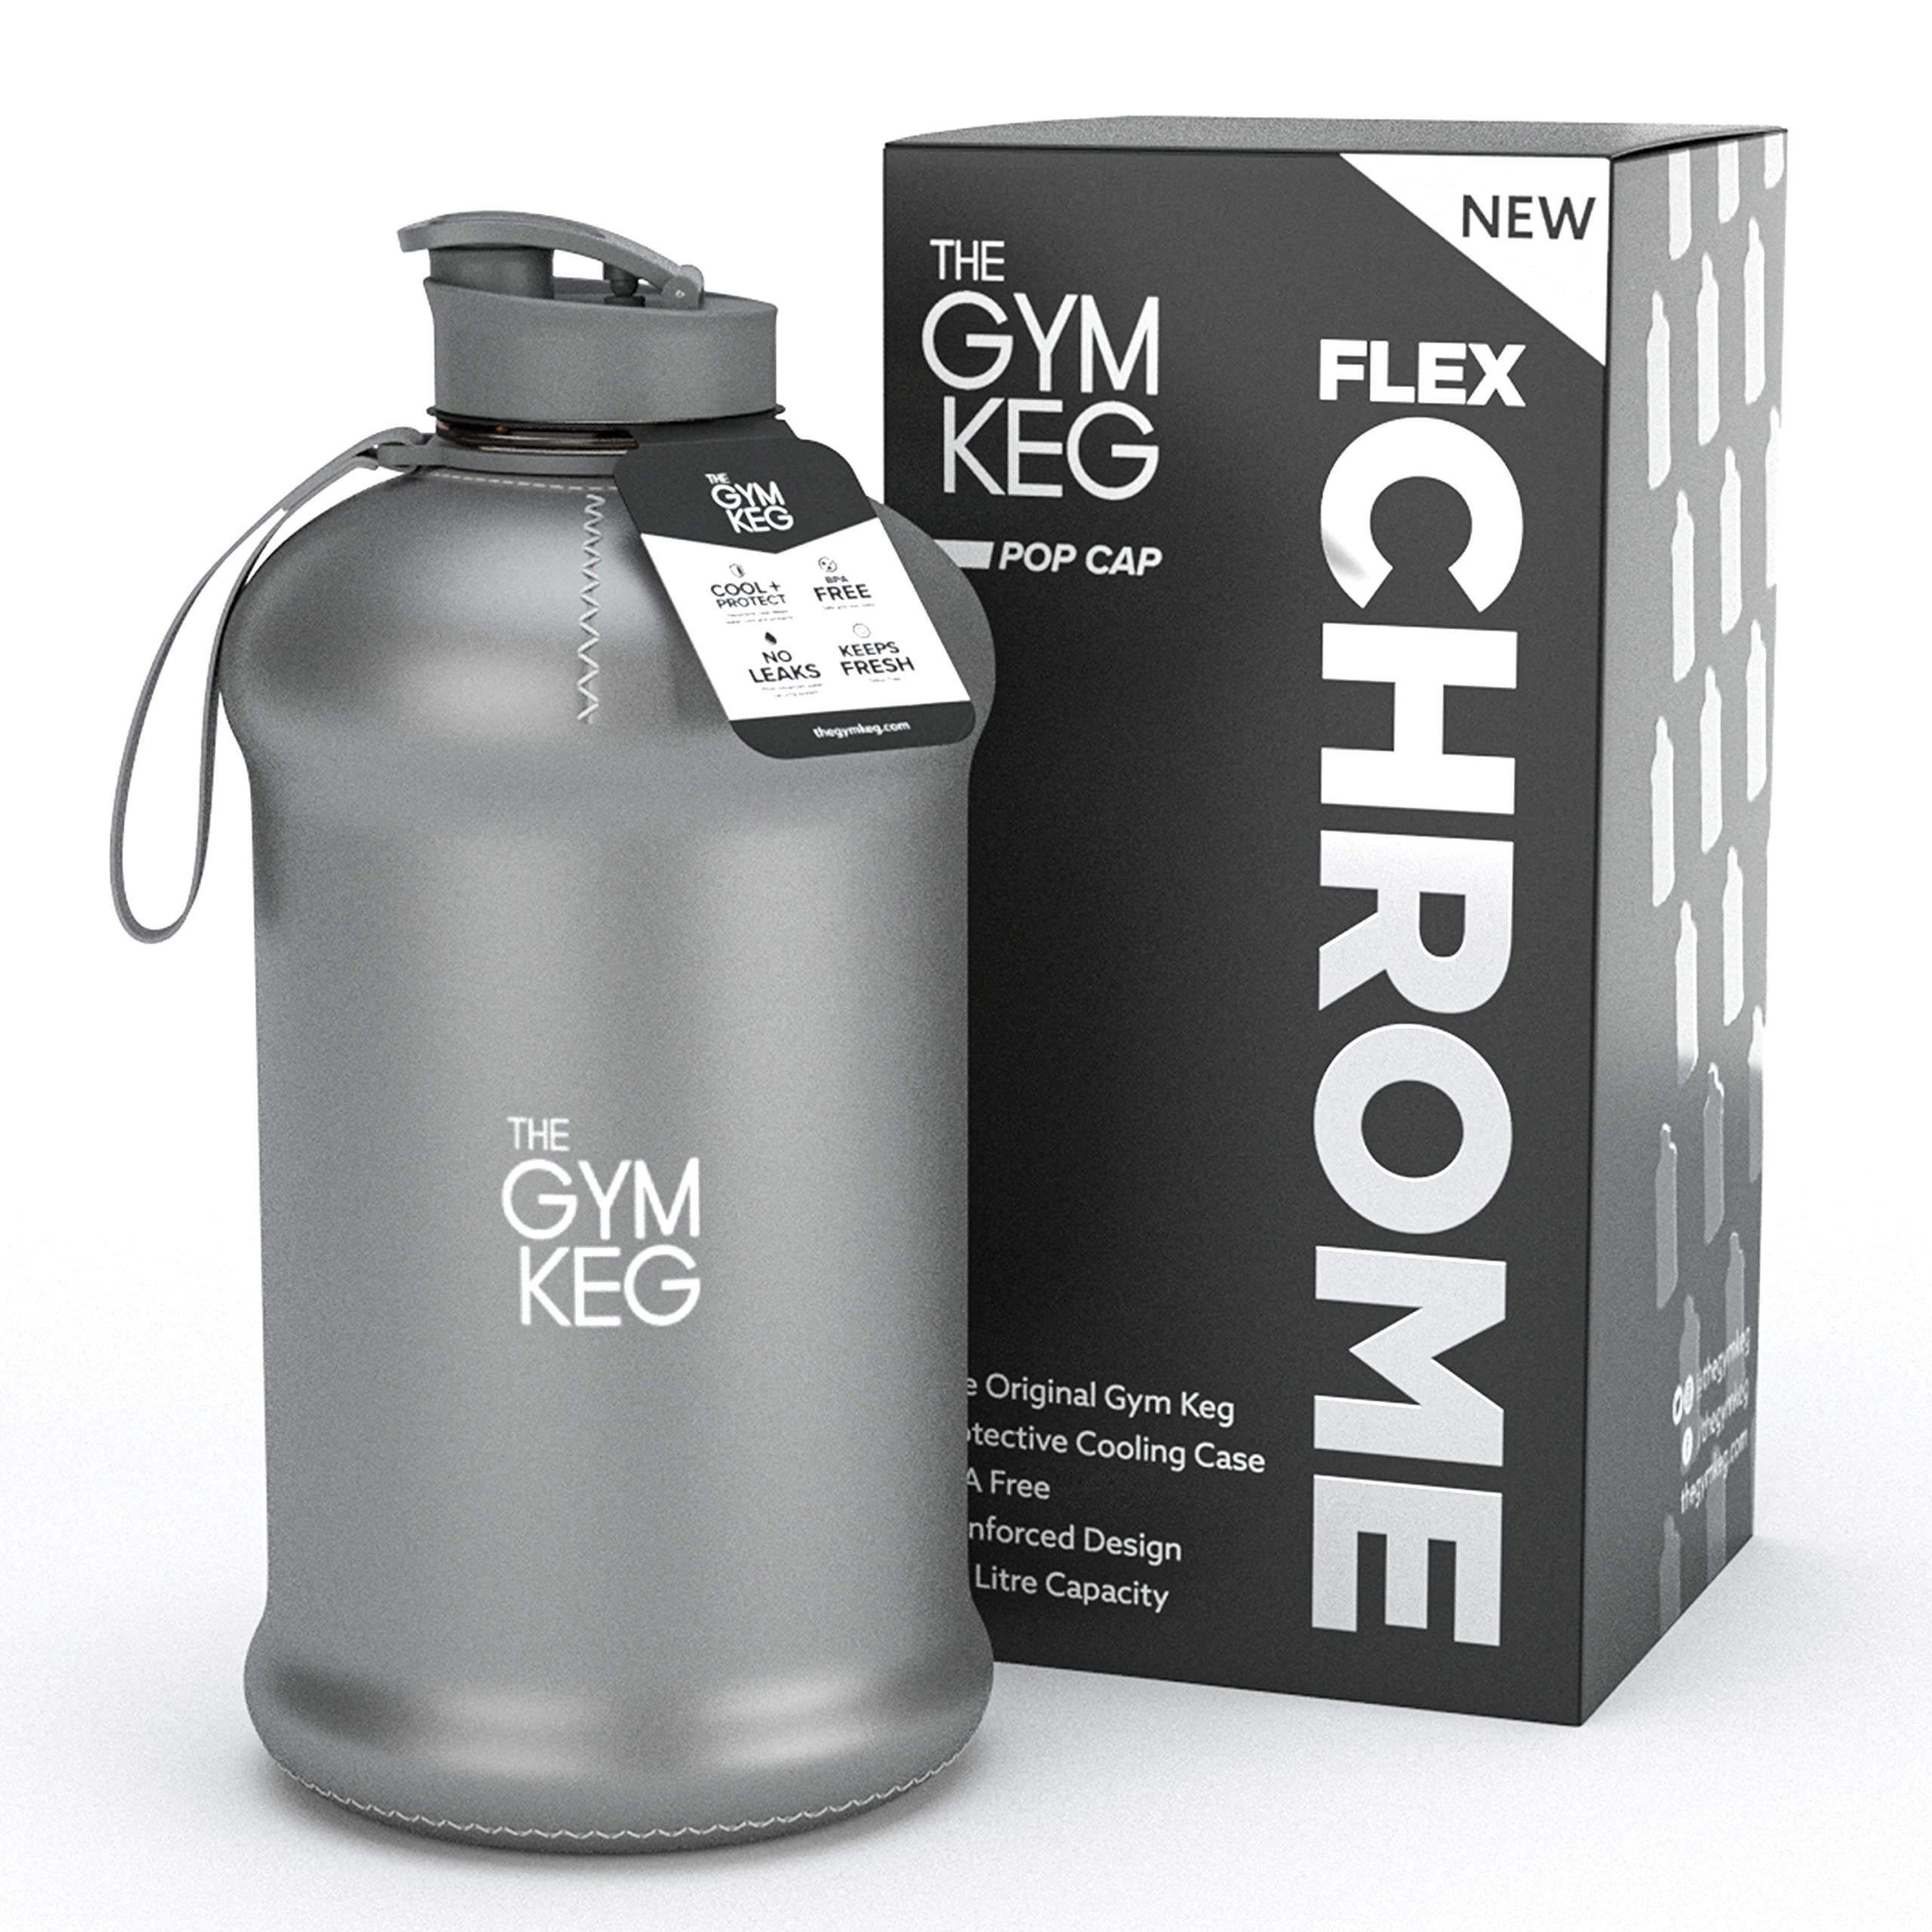 The Gym Keg Trinkflasche 2.2L Gym Trinkflasche mit Neoprene Sleeve und Griff, Wiederverwendbar, Chrom Reflex 2.2 Liter